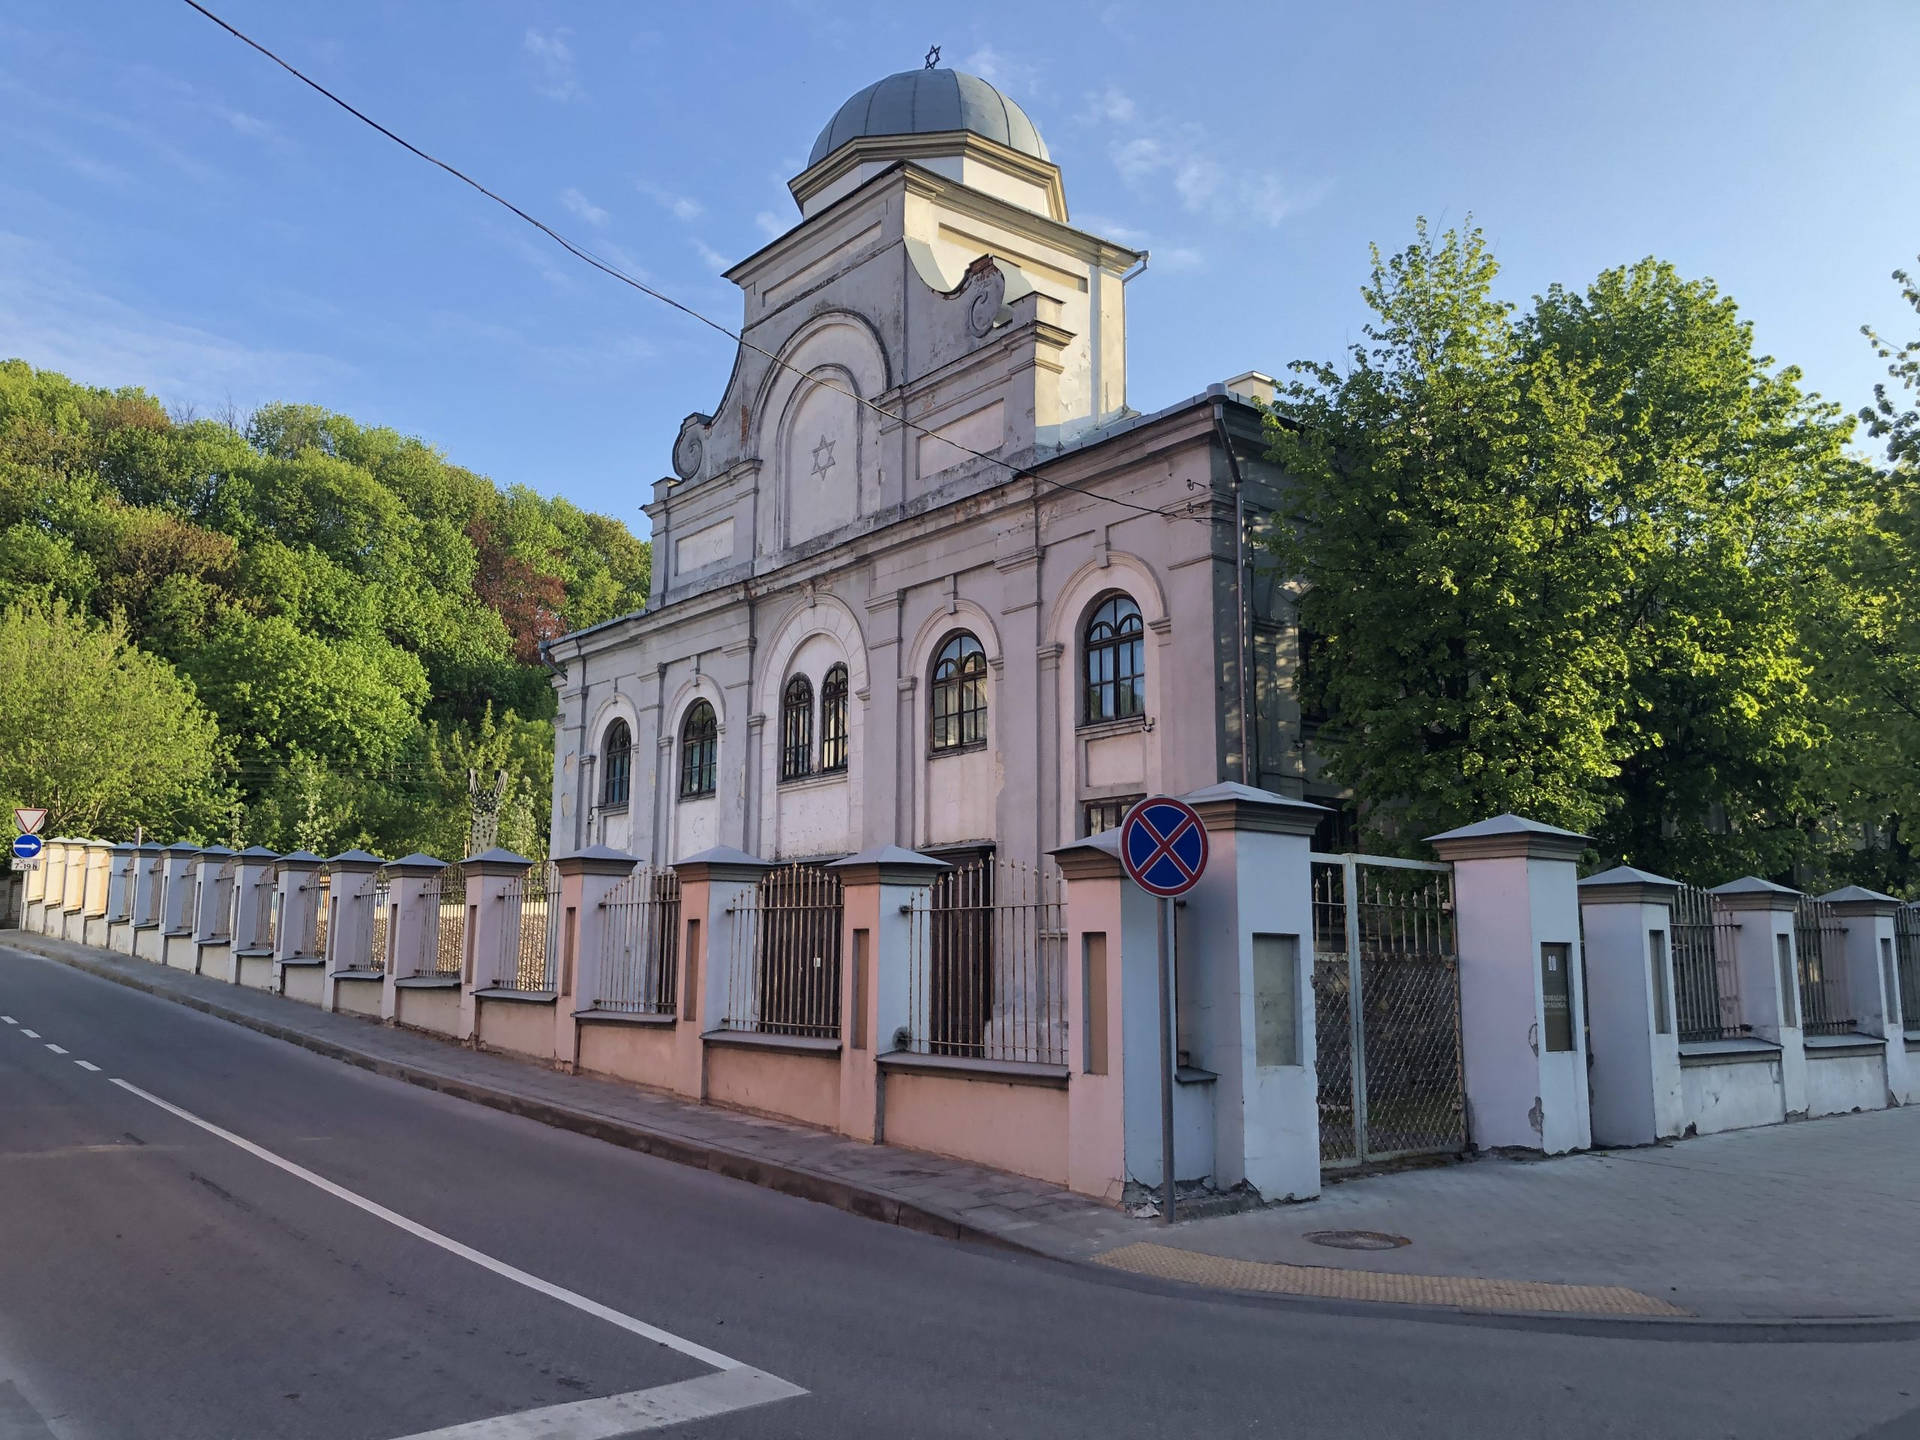 Vilniuskaunas Synagoge Wallpaper